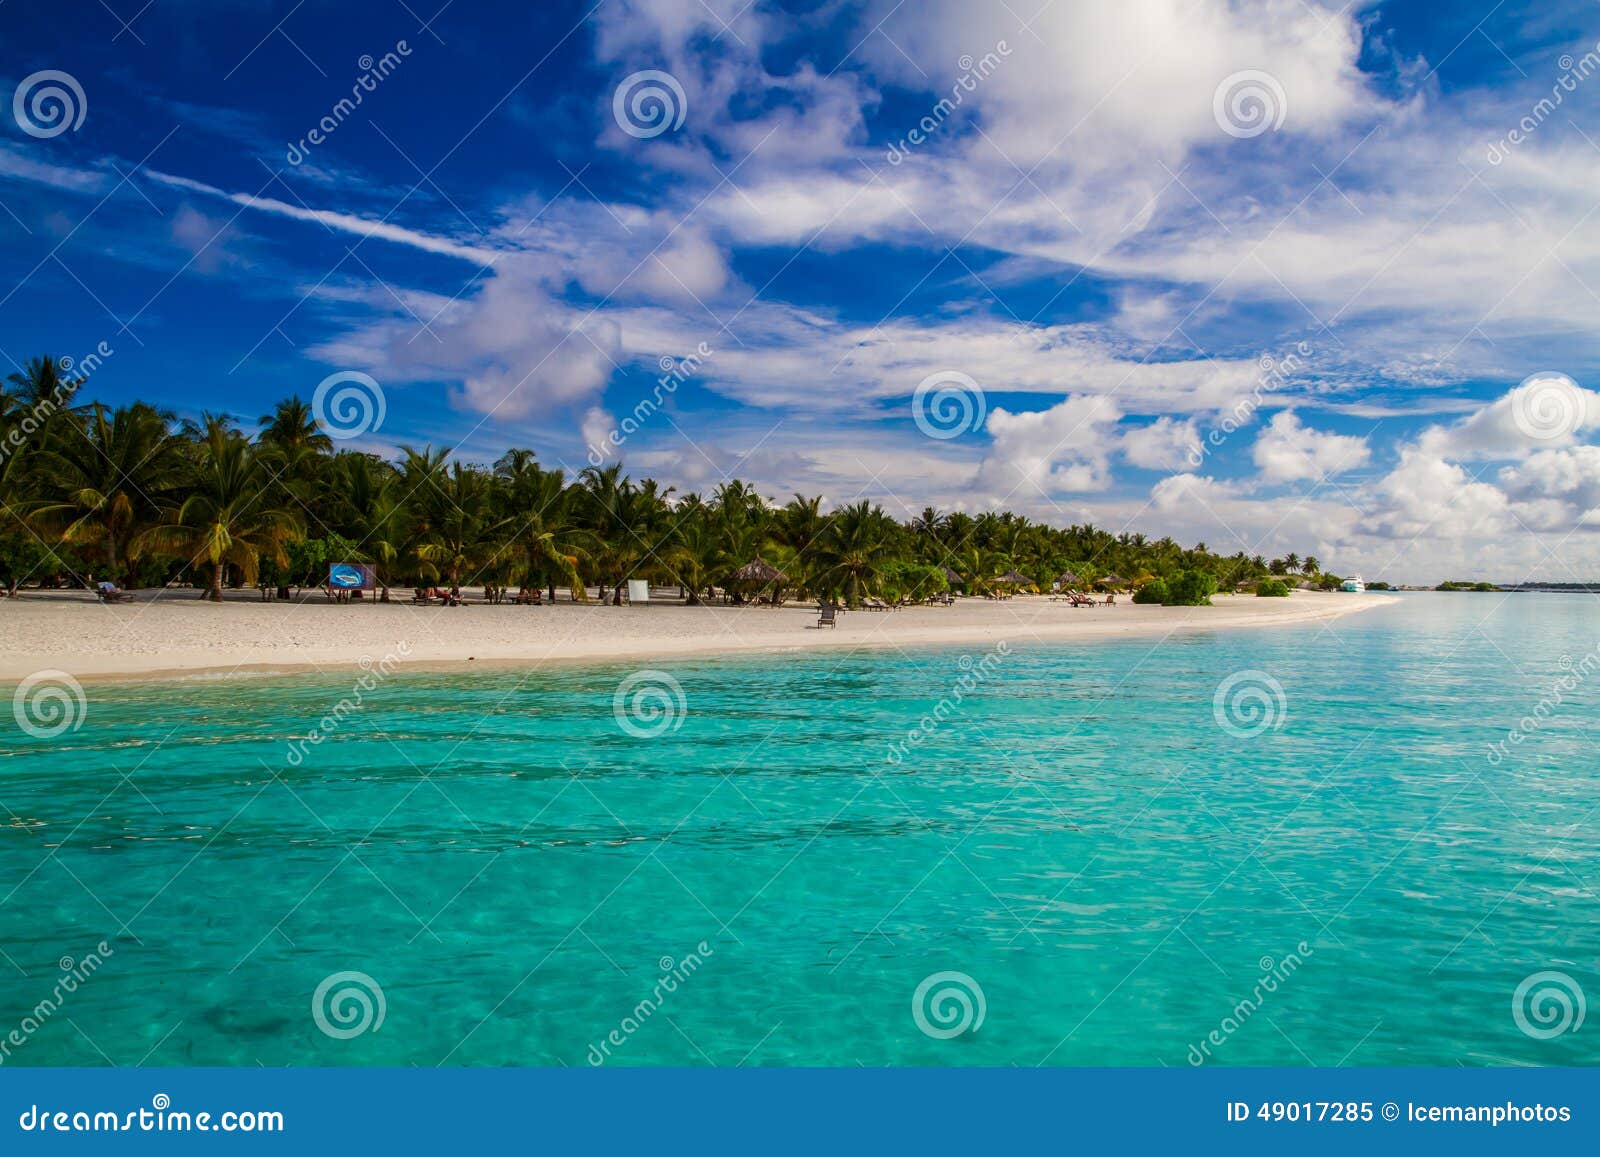 beautiful tropical beach landscape in maldives